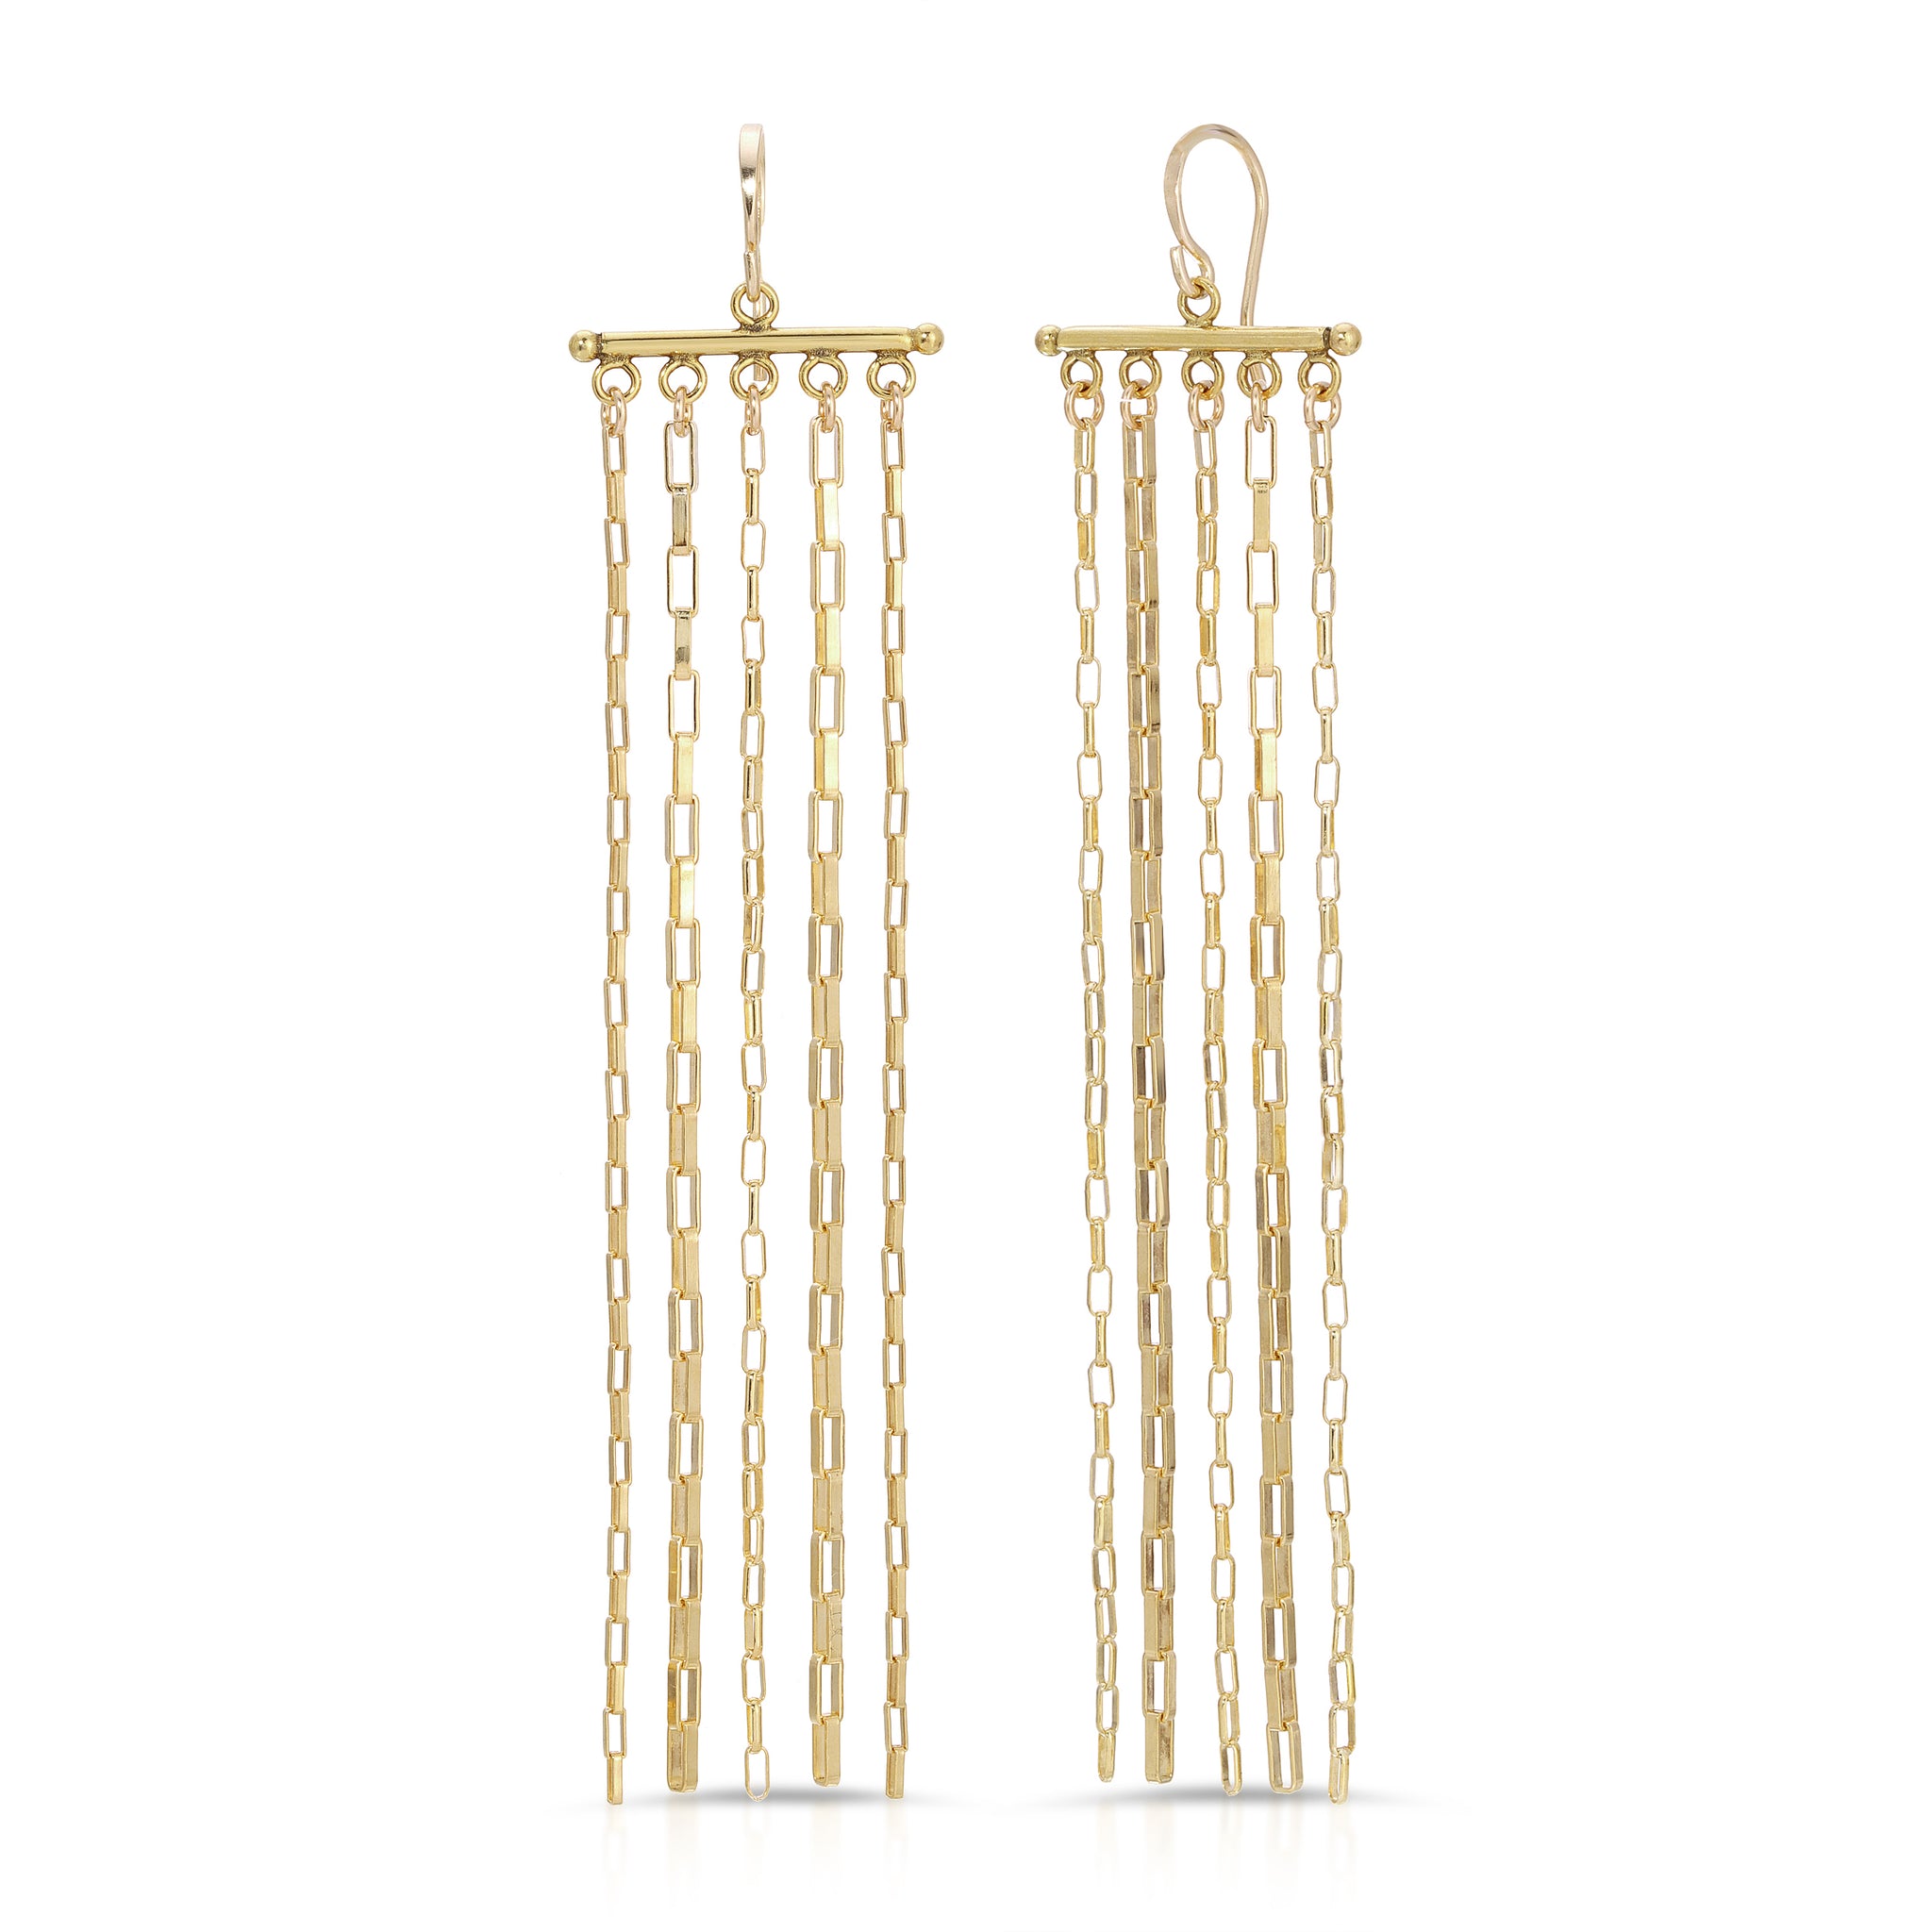 Long Gold Fringe Earrings, Tassel Earrings, Long Gold Chandelier Earrings,  Sterling Silver or 14k Gold Filled Earwires 